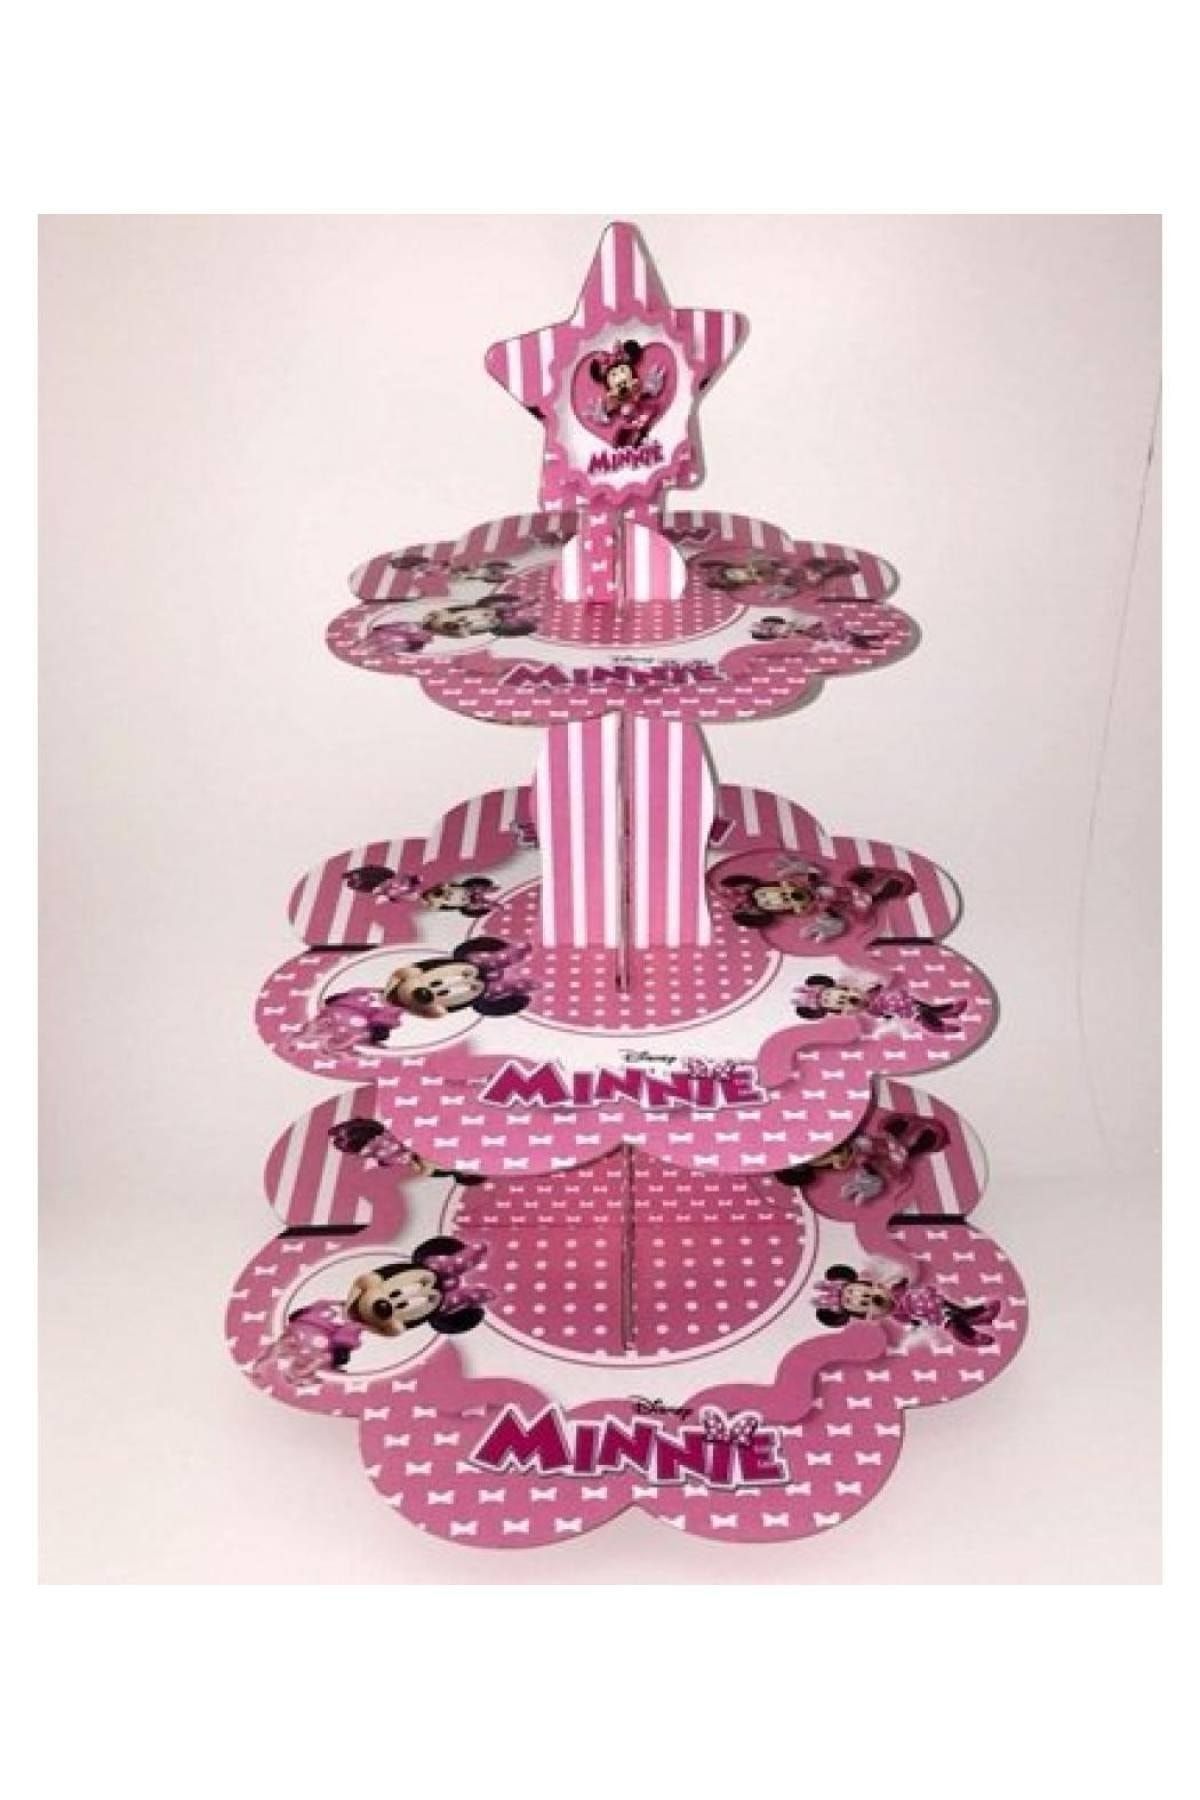 Huzur Party Store Minnie Mouse Temalı Kek Standı Fare Karakterli Karton Cup Cake Standı 3 Katlı Piramit Kurabiye Kule